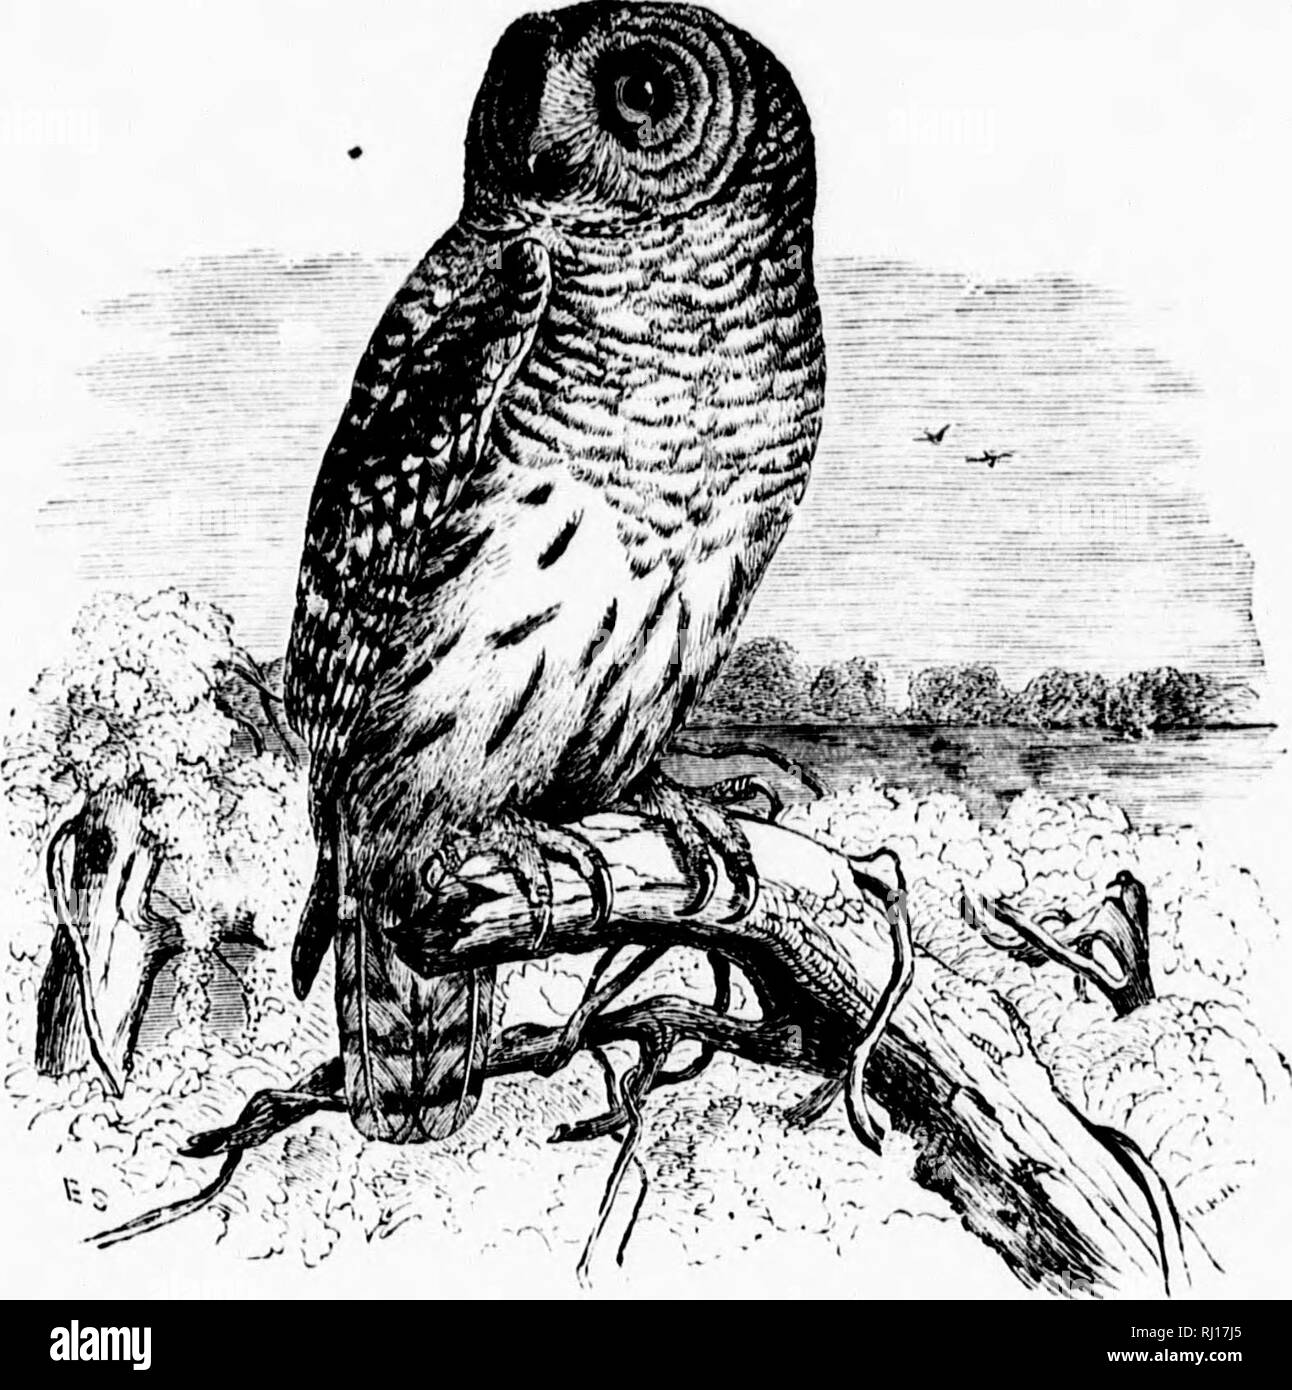 . Un popular manual de la ornitología de la parte oriental de América del Norte [microforma]. Las aves, ornitología; Oiseaux; Ornithologie. "R 1 ml 1 i r i ; 1 i 4 ' l^!. Barril) buho. El HOOT OWL. SyRNIUM NtBULOSUM. Char. Anteriormente, brown prohibido, manchada, y seccionado con gris embotado o tawny ; a continuación, colores similares de tonos más pálidos; la cara, rayas grises; luces traseras excluidos; iris negro pardusco; pico amarillo. Longitud jq^ a 24 pulgadas. Puede distinguir fácilmente de las otras especies por sus ojos oscuros. IMV^st generalmente en un árbol hueco, pero a menudo una desierta nido de cuervo o Hawk es re-rayado y utilizado. ££^s. 2-4; blanco y casi esférico; 195 Foto de stock